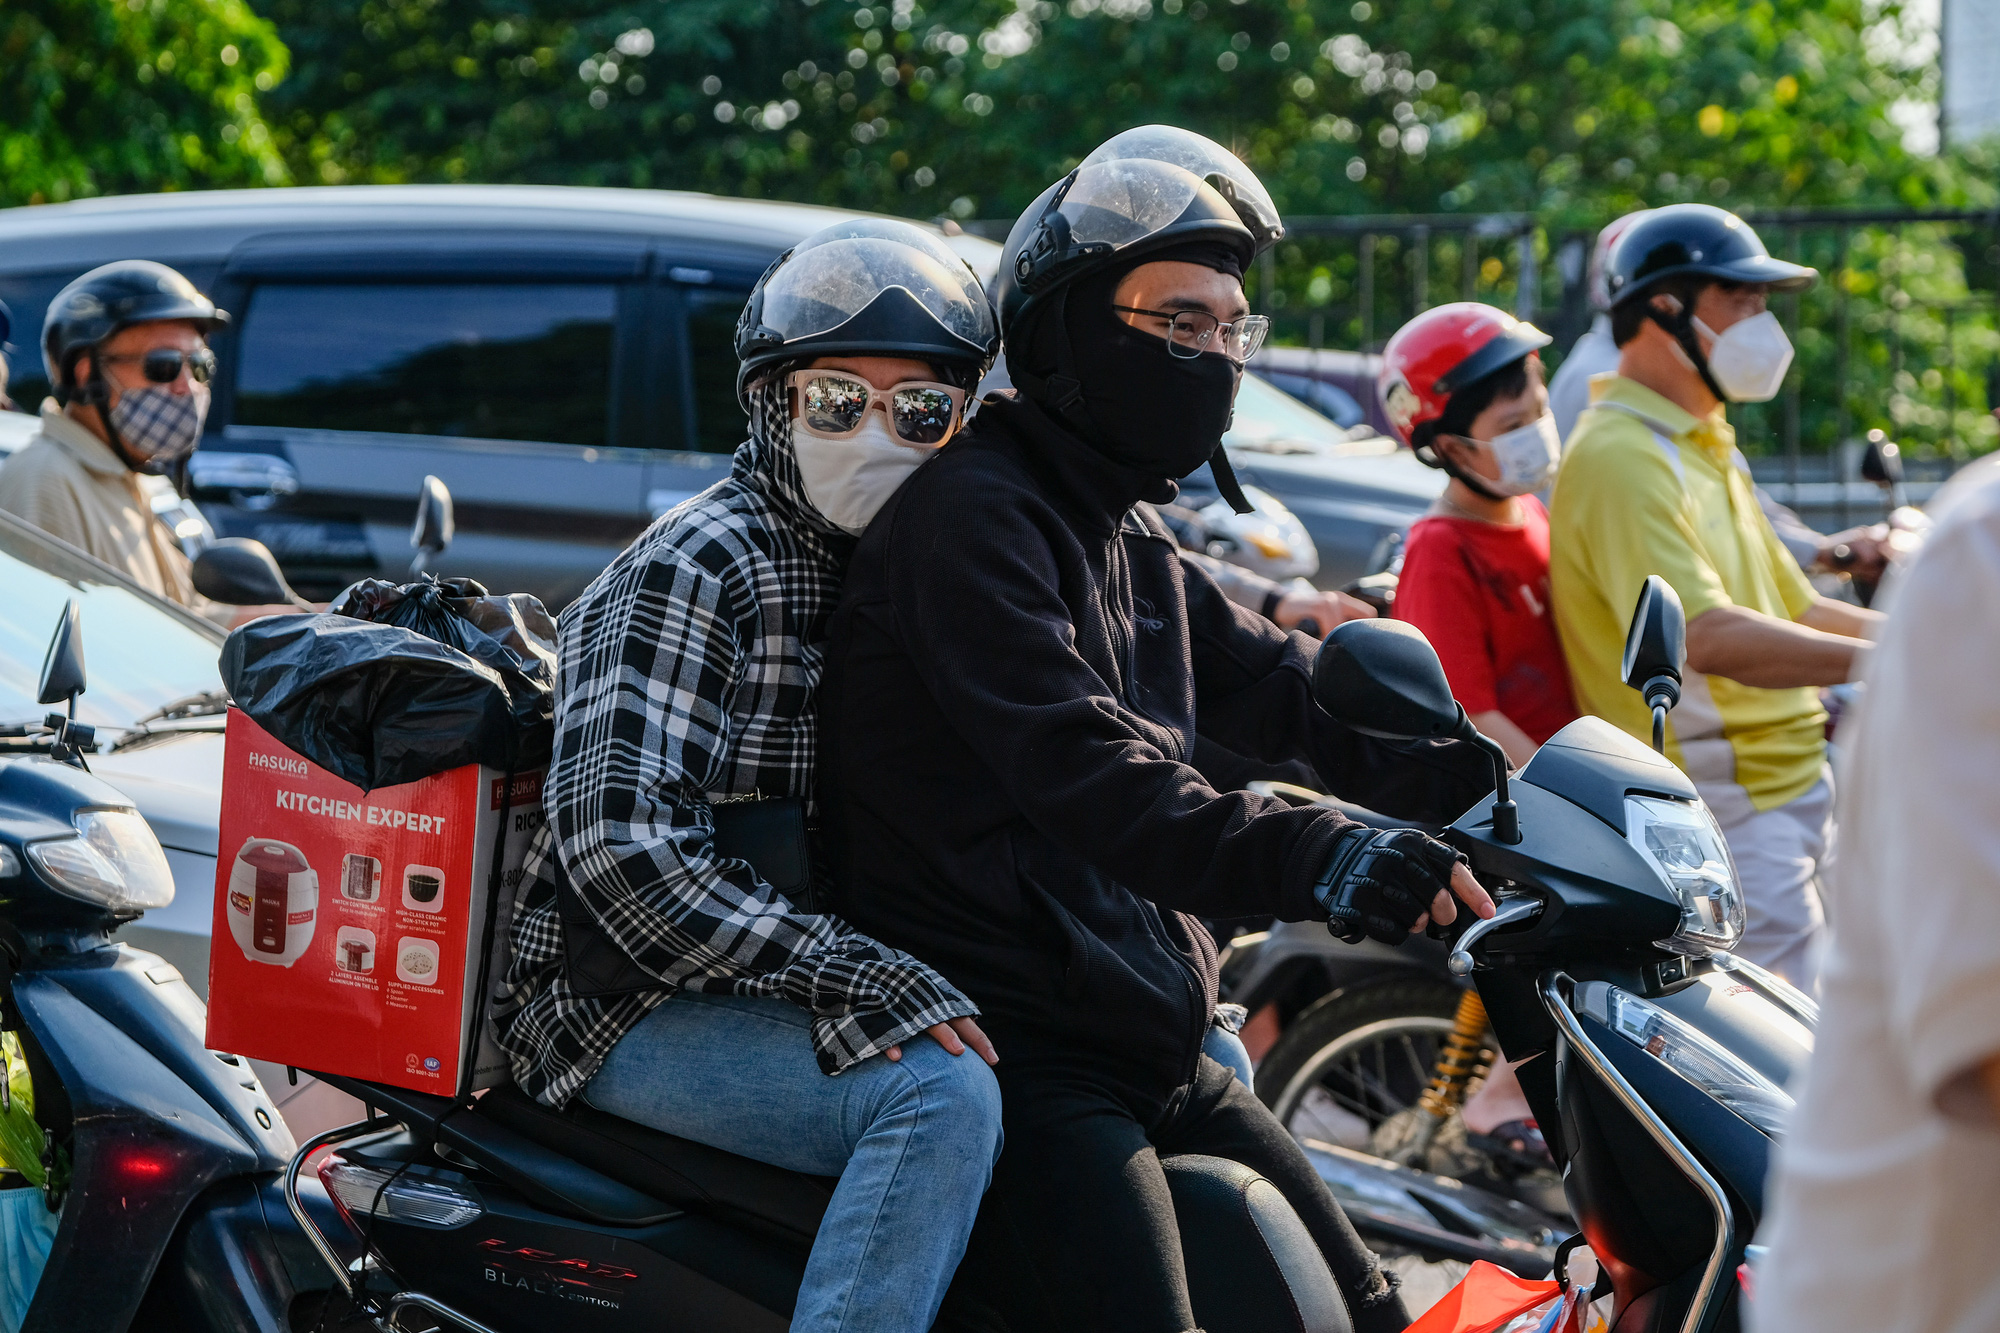 Người dân ùn ùn quay trở lại Hà Nội dù chưa kết thúc kỳ nghỉ lễ vì nỗi sợ tắc đường, giao thông khu vực cửa ngõ ùn ứ-5